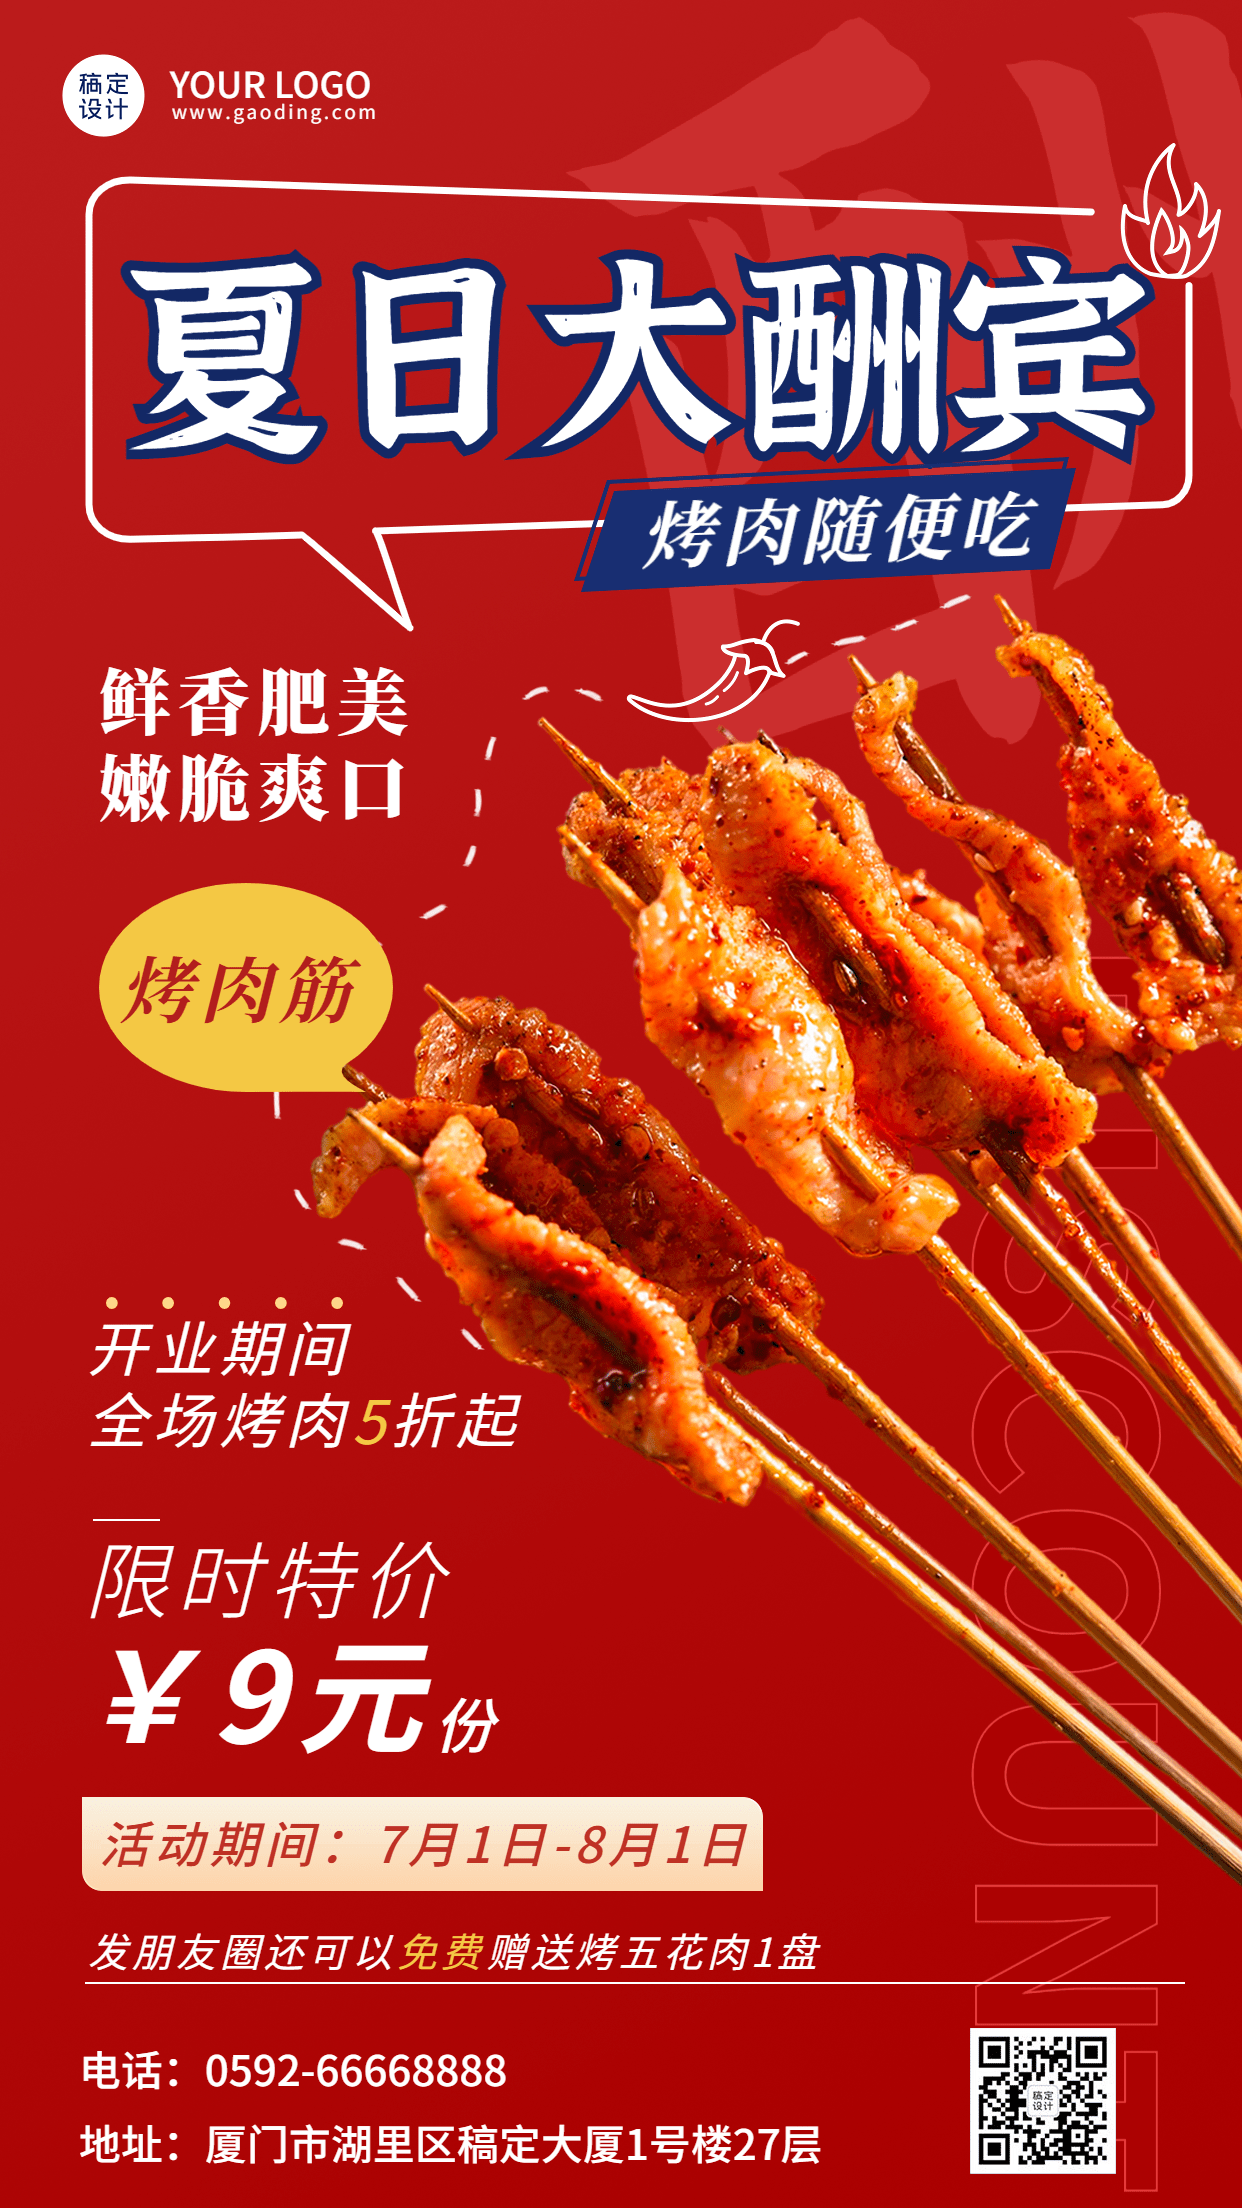 餐饮夏季营销烤肉产品营销手机海报